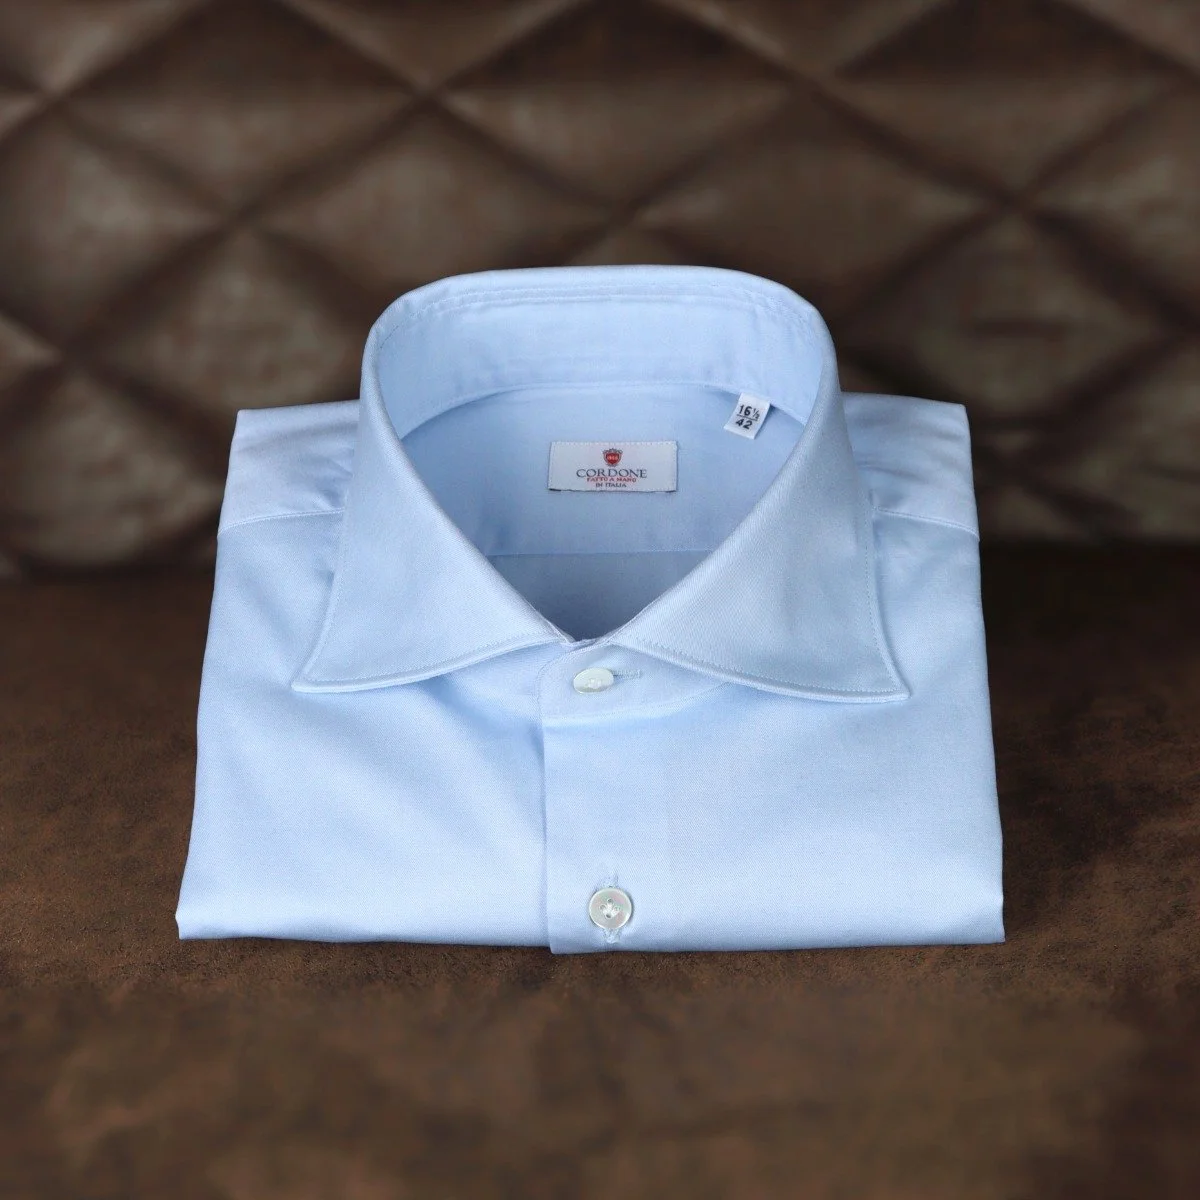 Light blue dress shirt- top 5 men's dress shirts